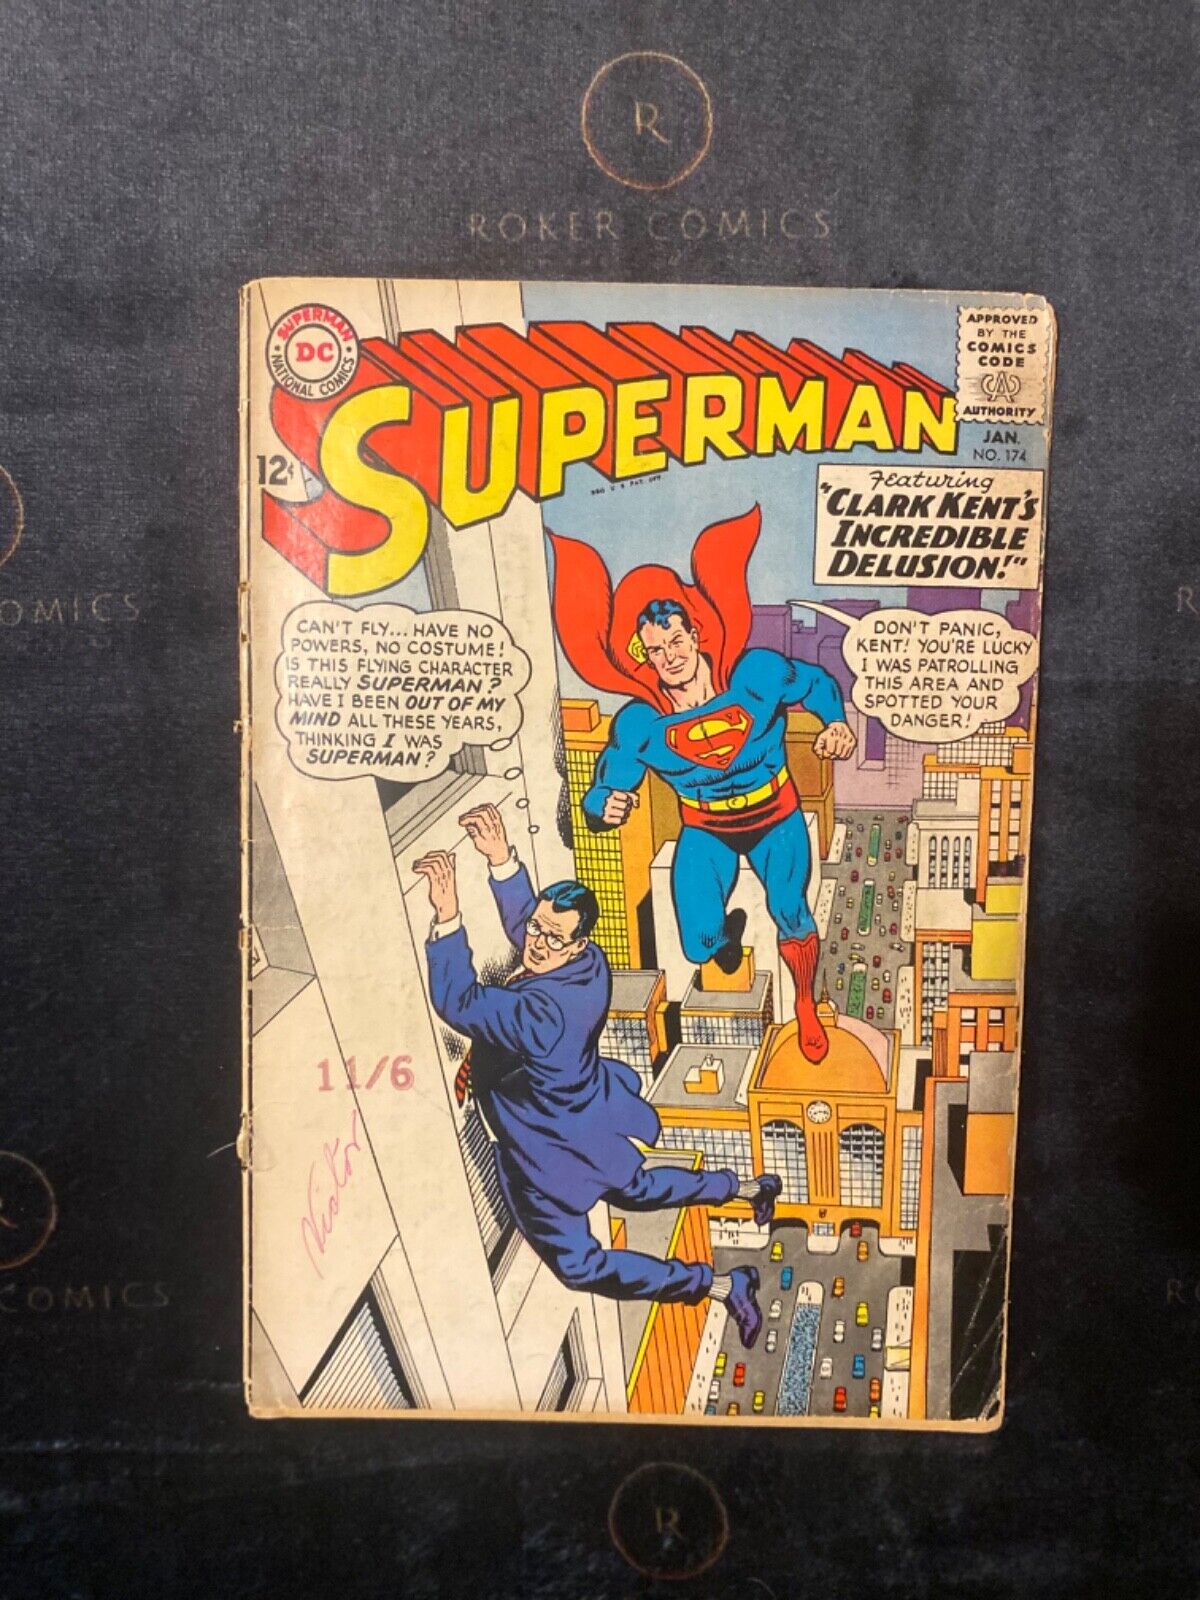 RARE 1965 Superman #174 (SILVER AGE)